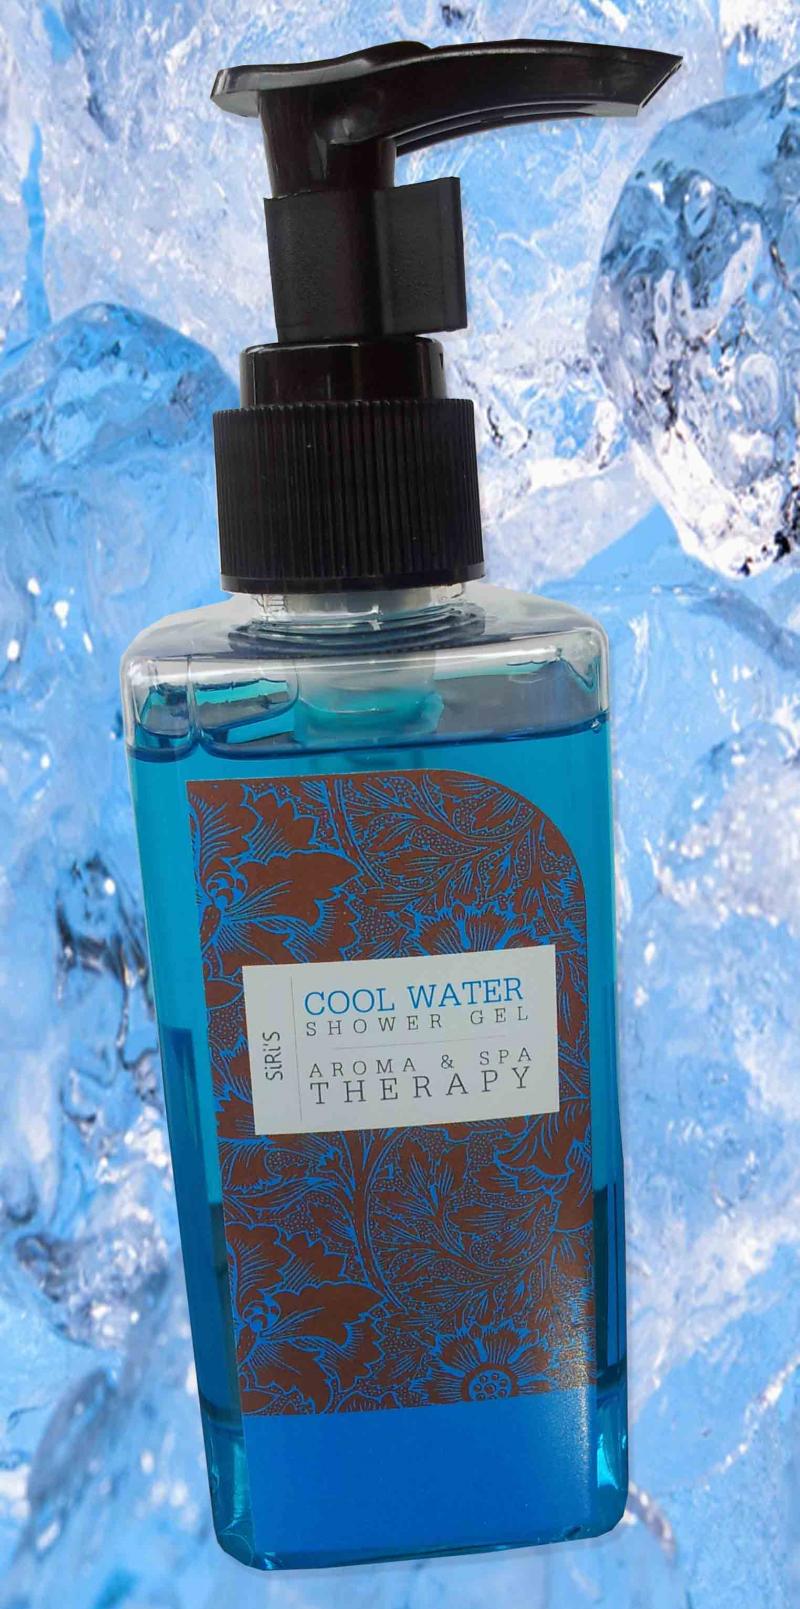 ครีมอาบน้ำ SiRi's Cool water Shower Gel Aroma&Spa Therapy